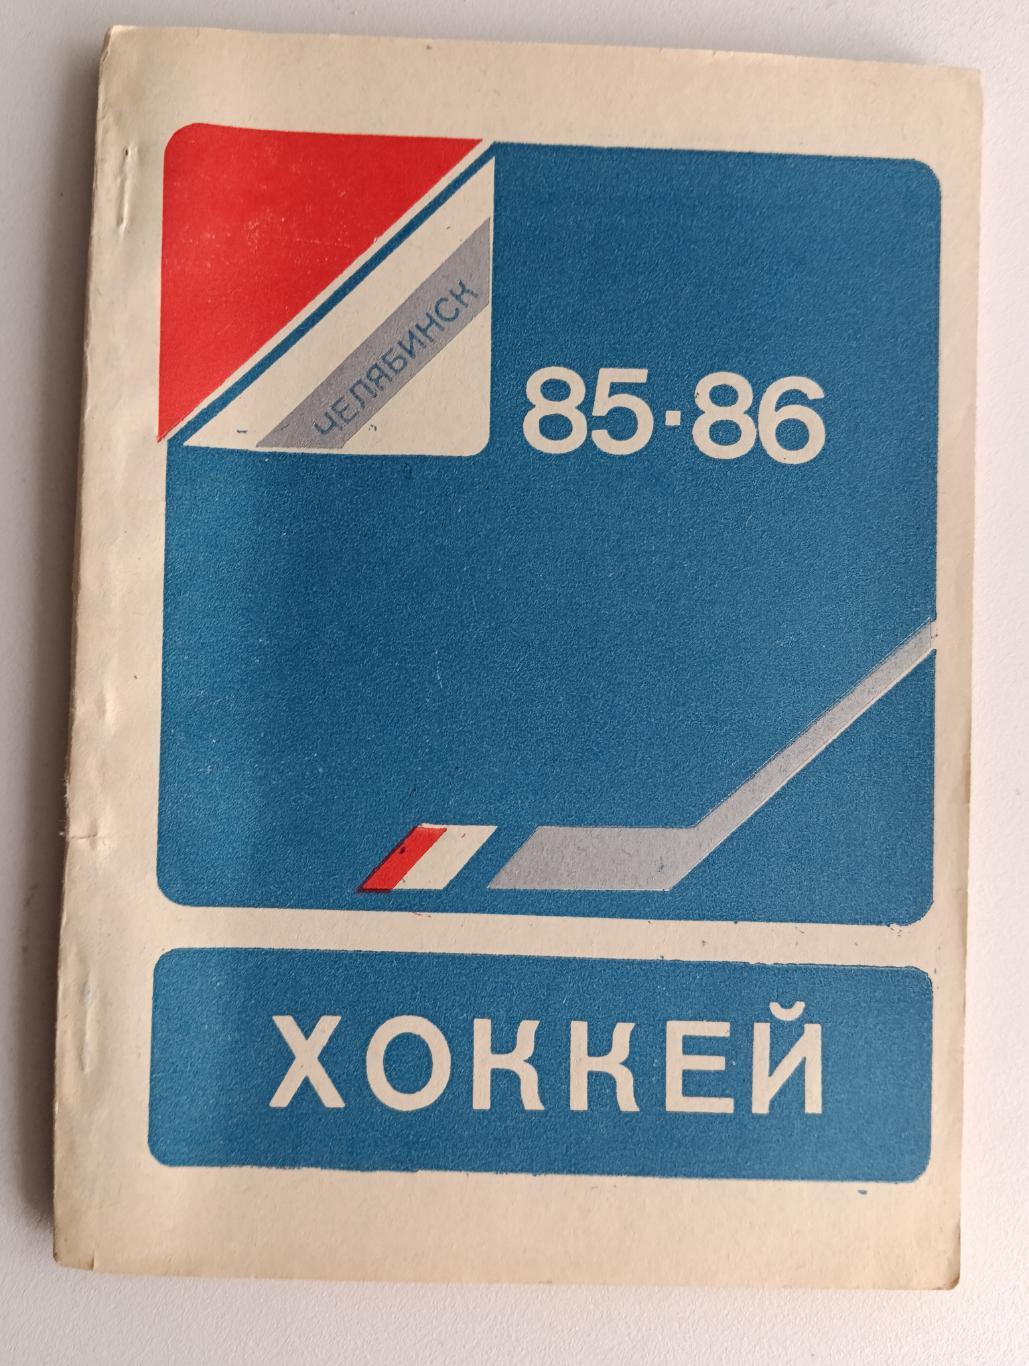 Хоккей Челябинск 85-86